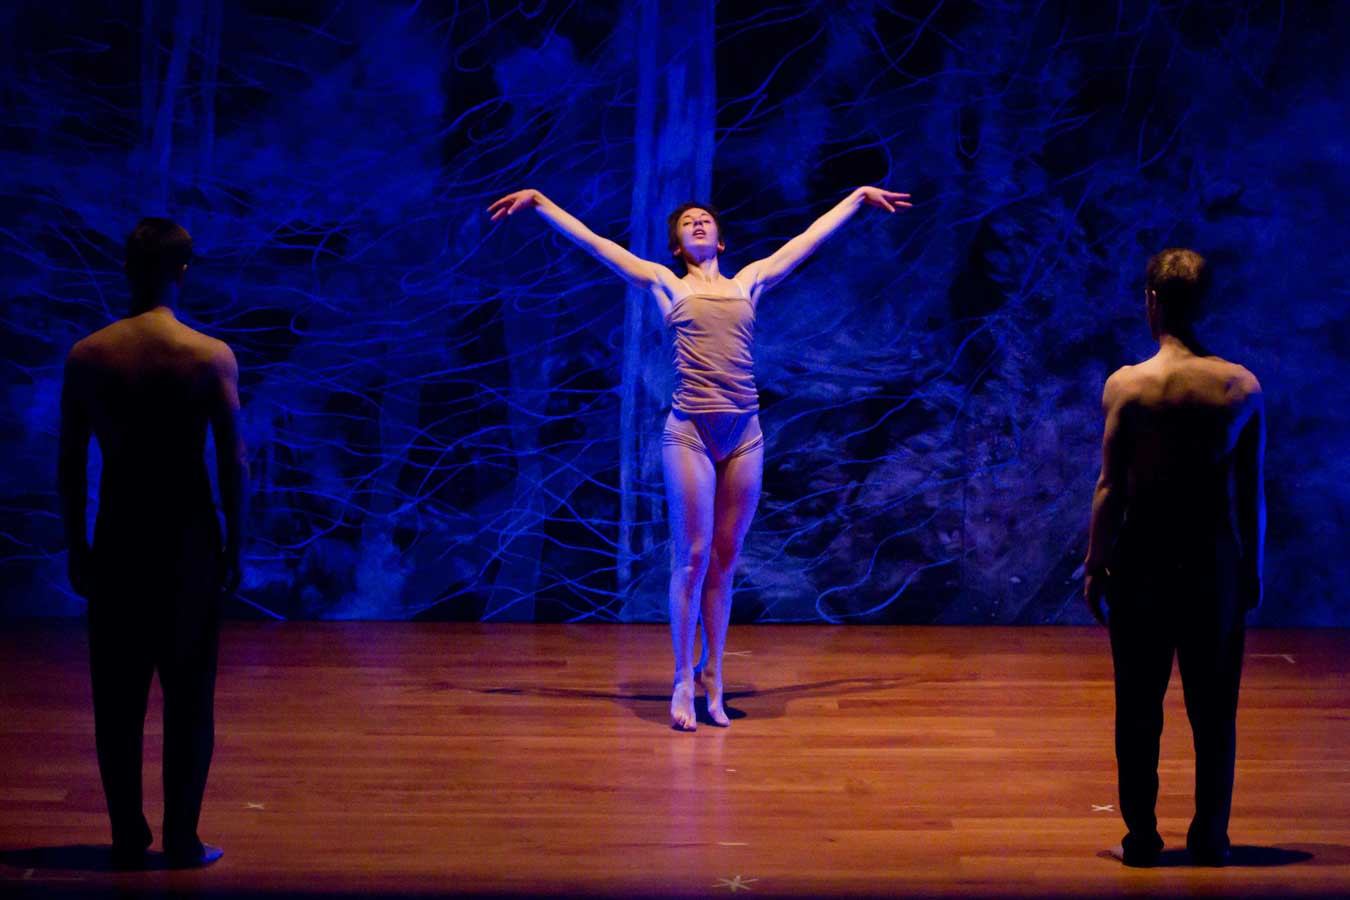 cristina-cocco-spettacolo-multimediale-2012-levitazioni-conservatorio-cesare-pollini-performer-monica-polonio